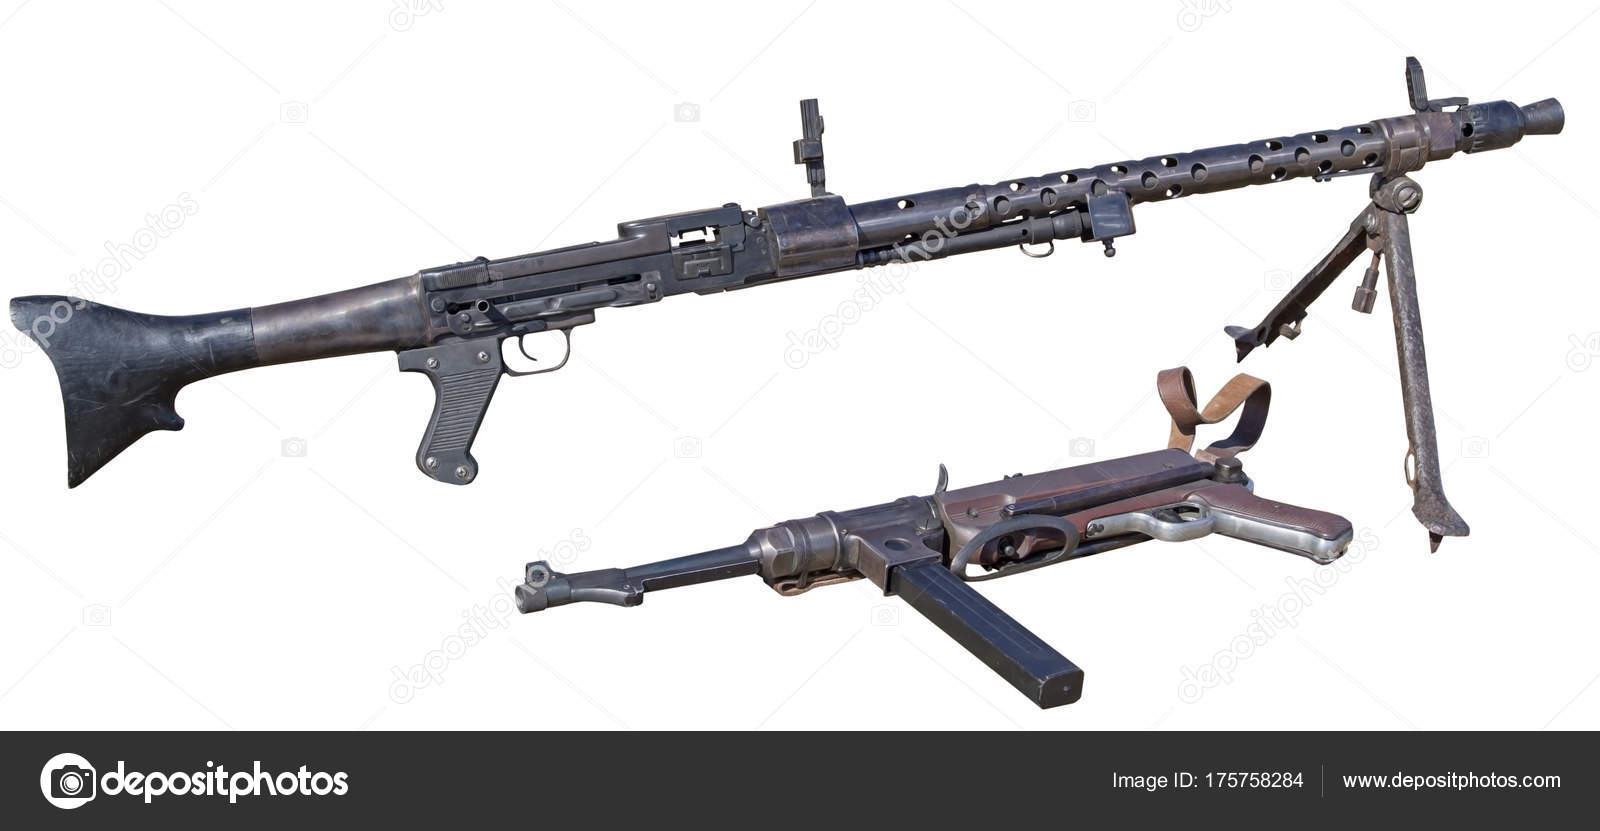 German Mp40 Submachine Gun And Machine Gun Isolated On White Stock Photo C Vega 240 175758284